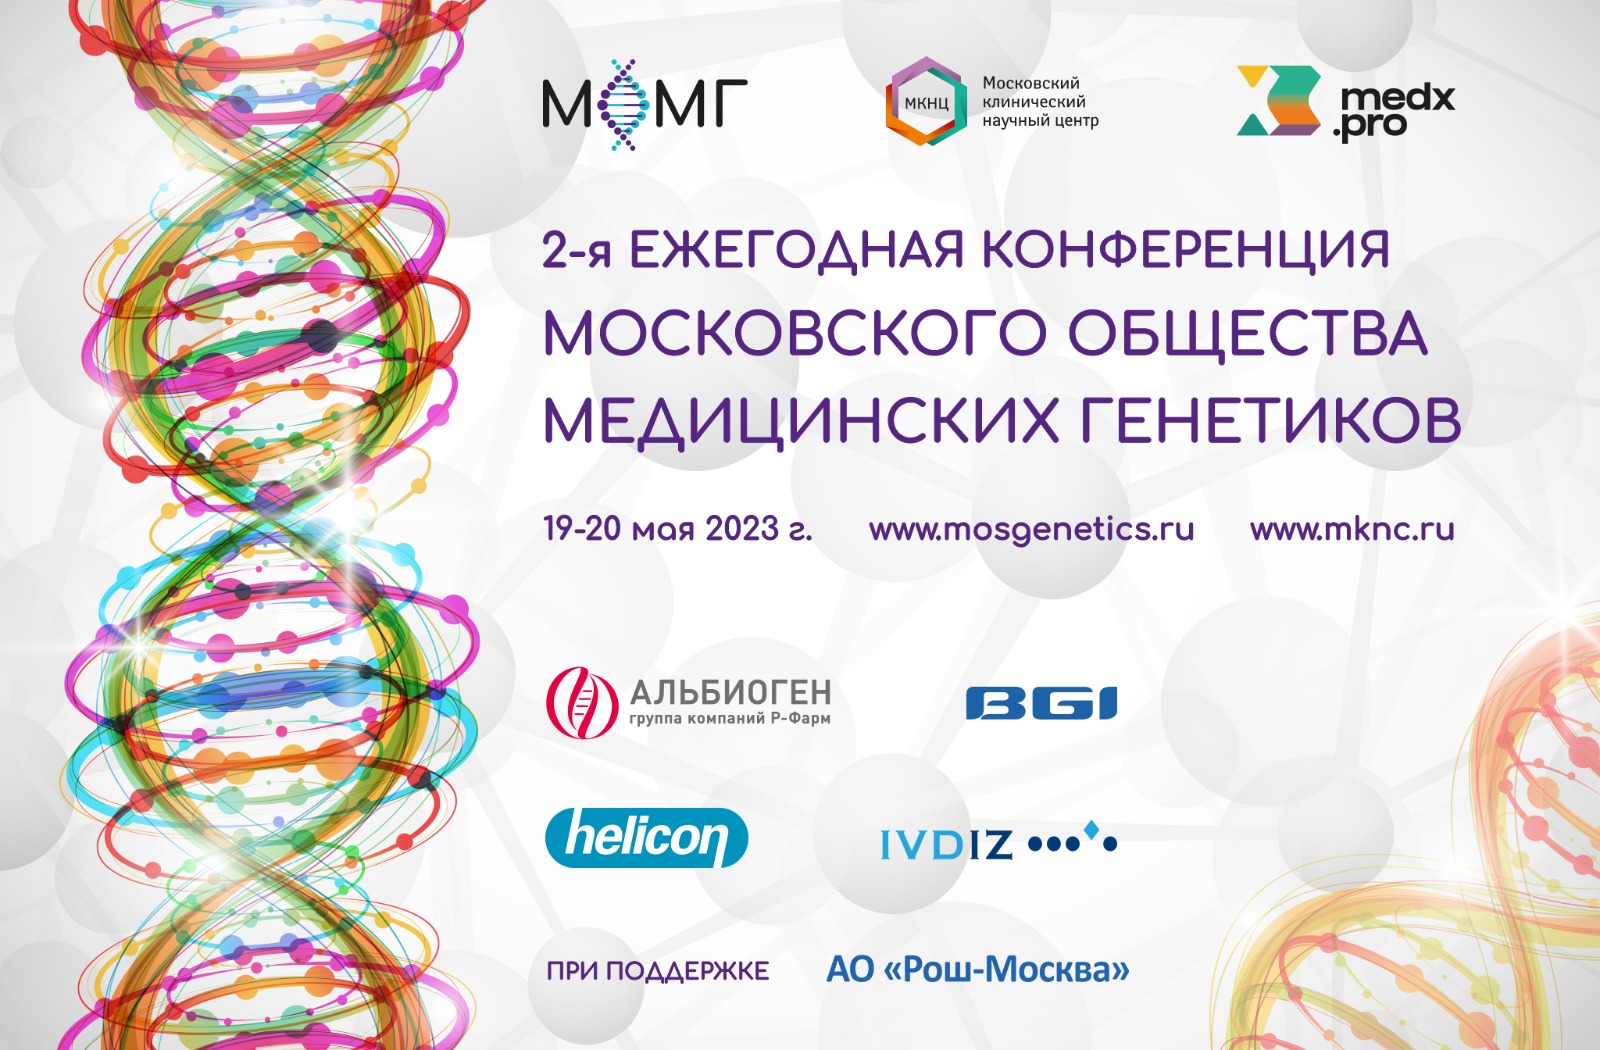 2-я Ежегодная конференция Московского общества медицинских генетиков